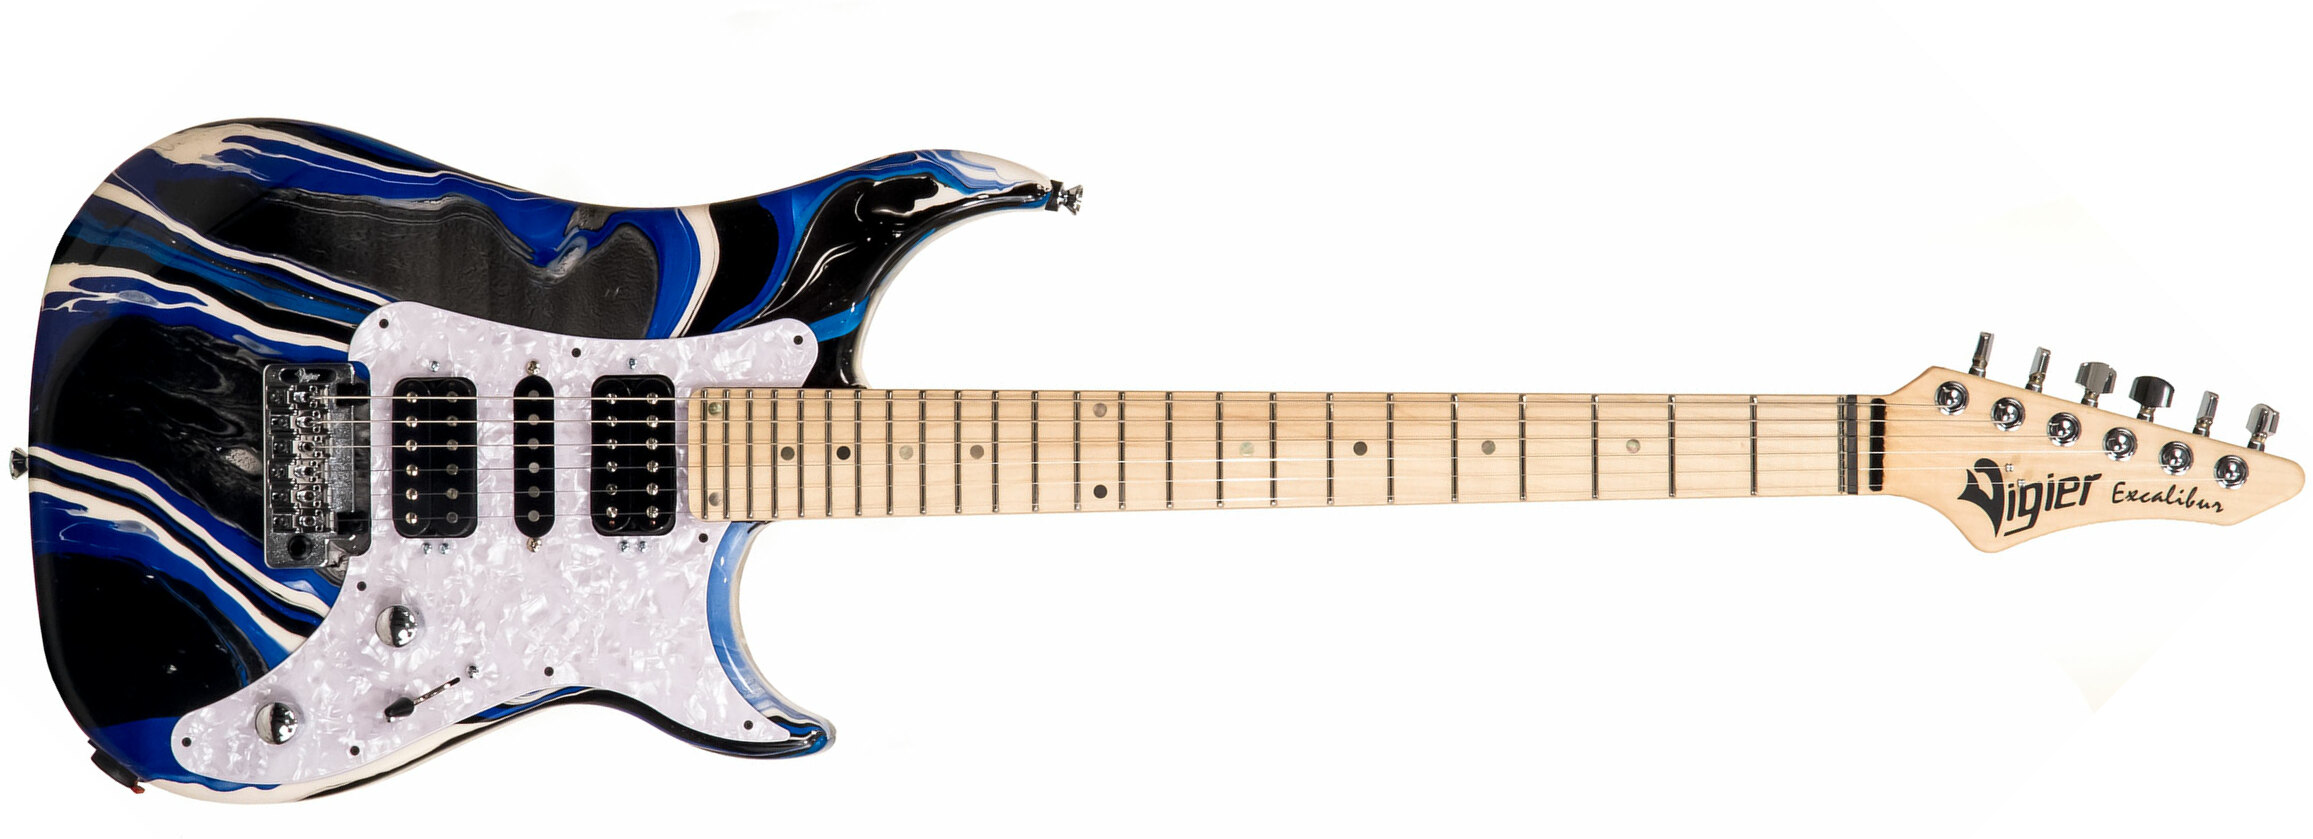 Vigier Excalibur Supraa Hsh Trem Mn - Rock Art Blue White Black - Double Cut E-Gitarre - Main picture